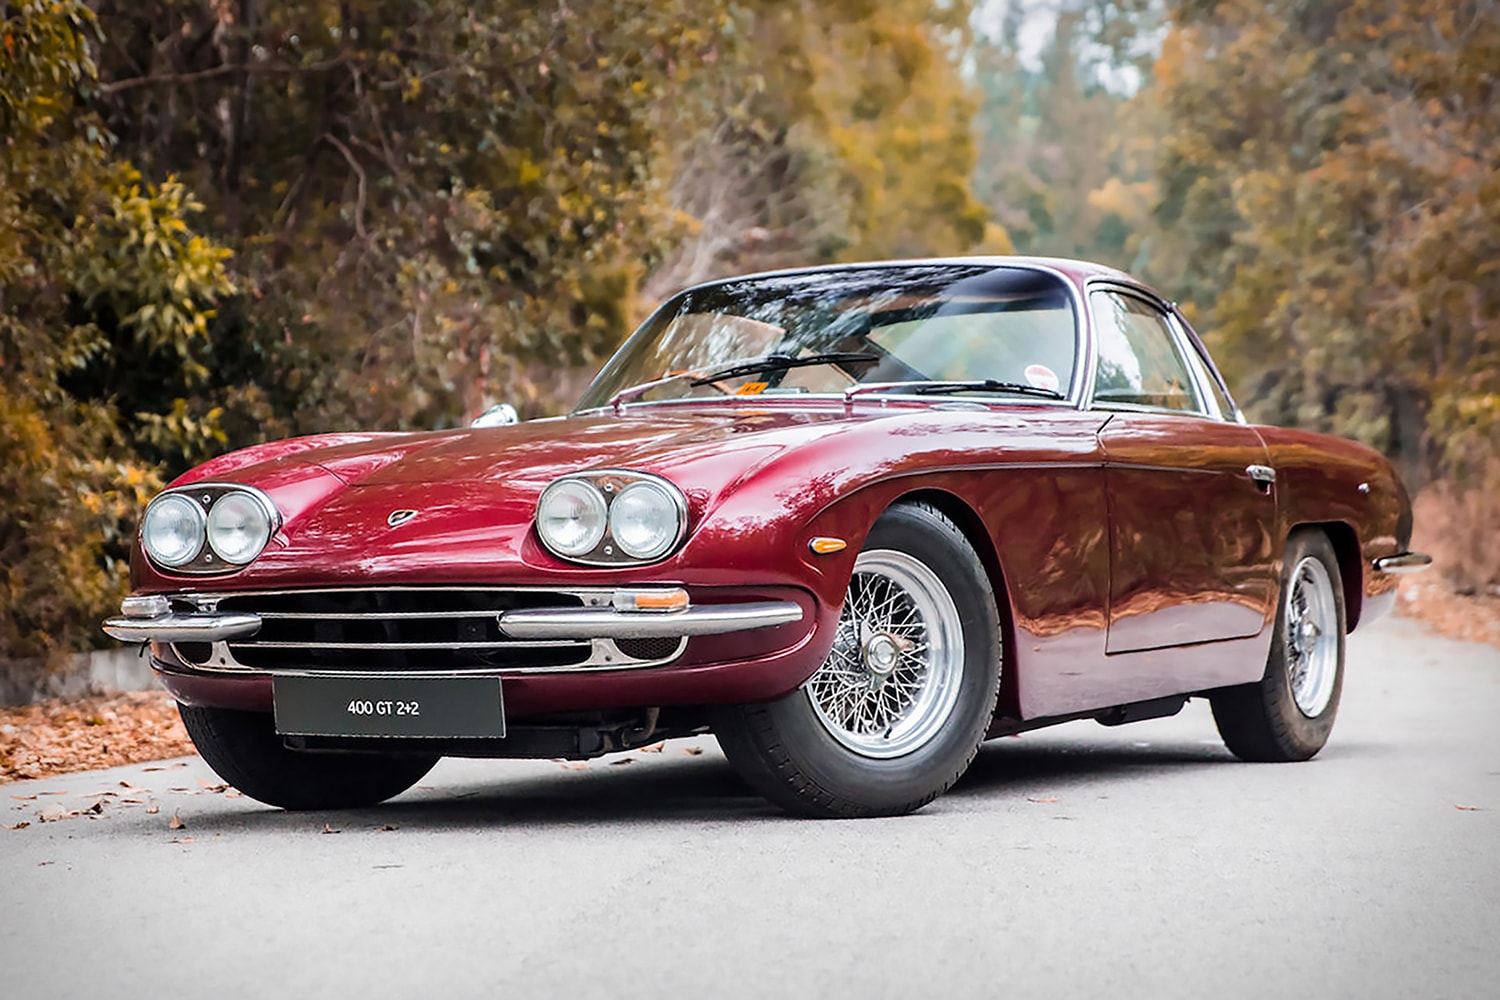 Paul McCartney 1967 Lamborghini 400 GT For Sale auction beatles vintage car bonhams